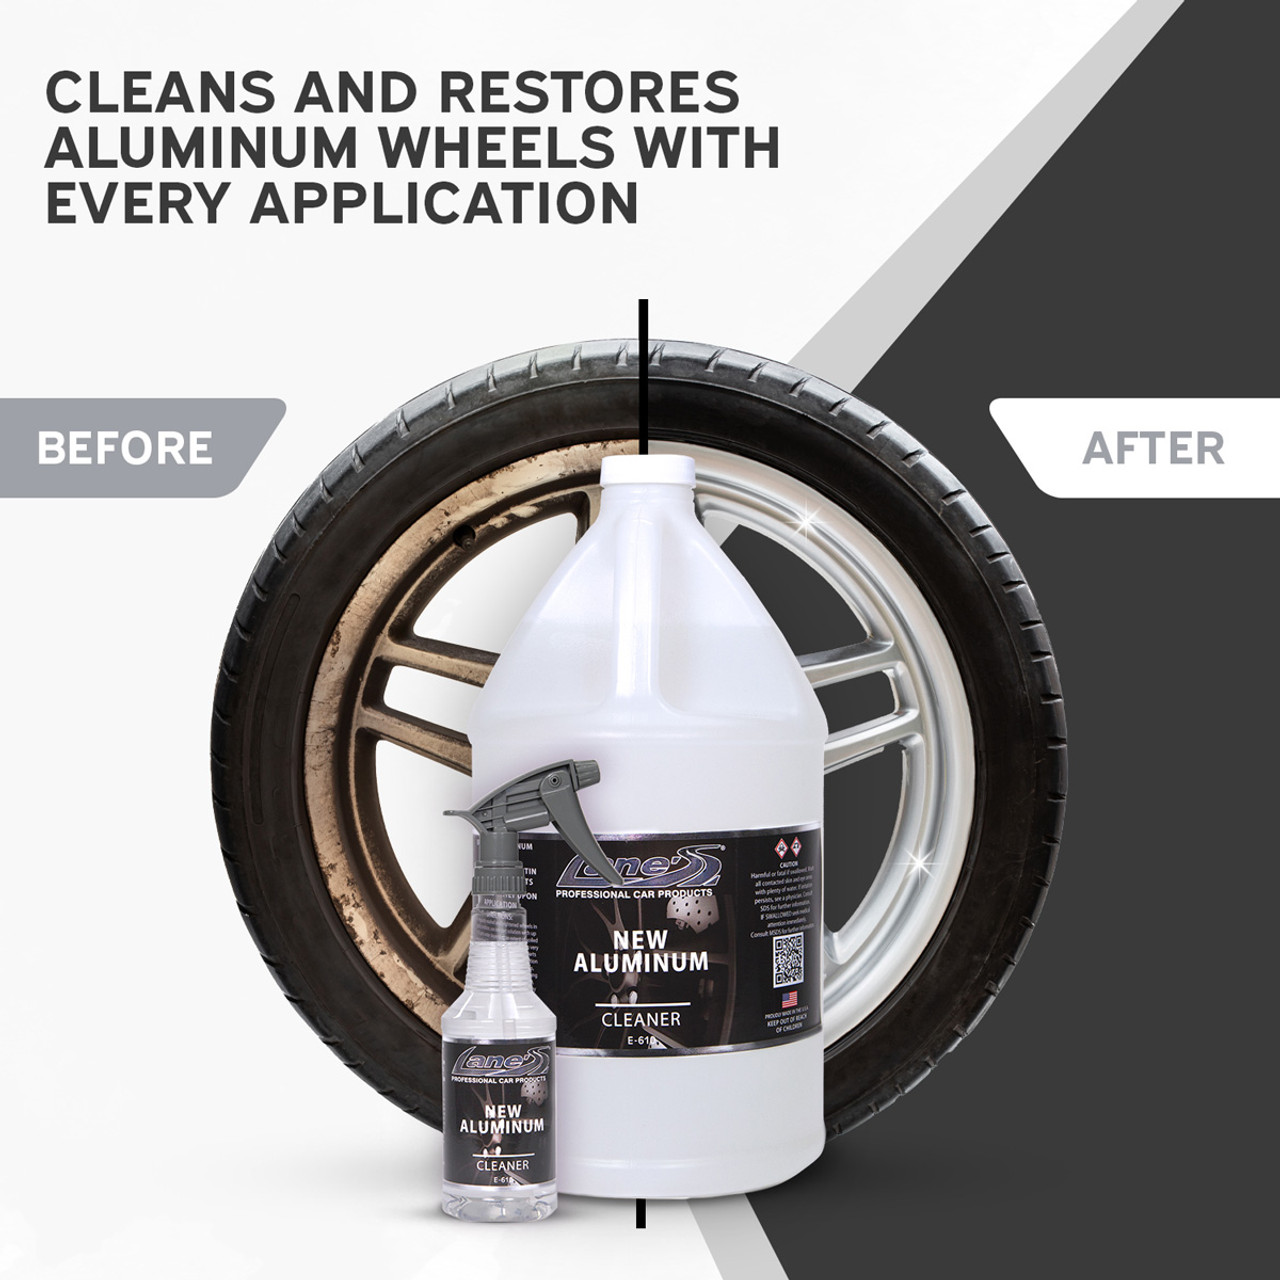 Lane's Aluminum Wheel Cleaner - Best Acidic Wheel Cleaner on the